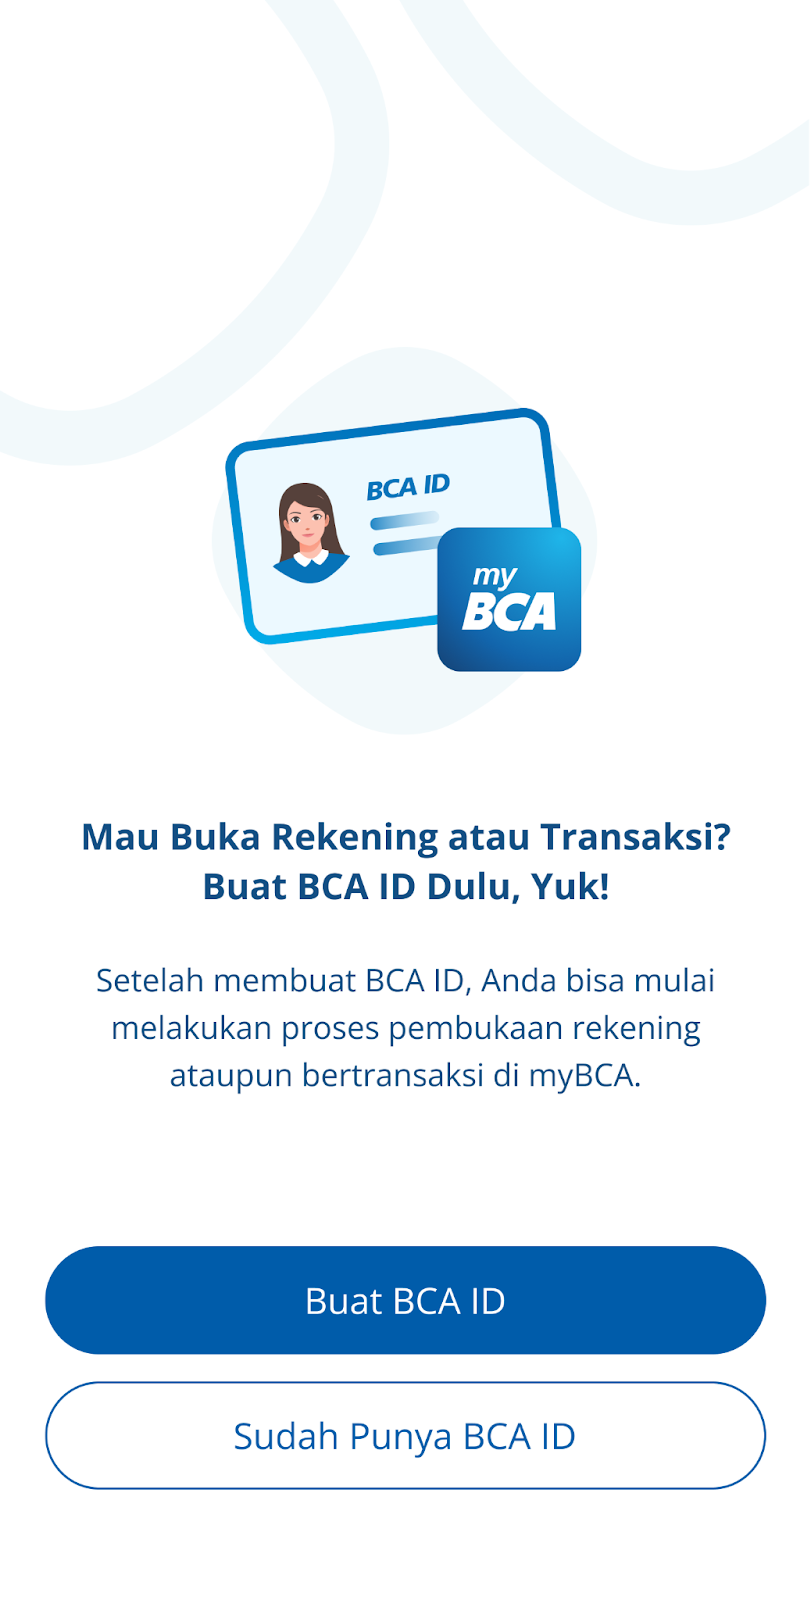 Serba-serbi tentang BCA ID